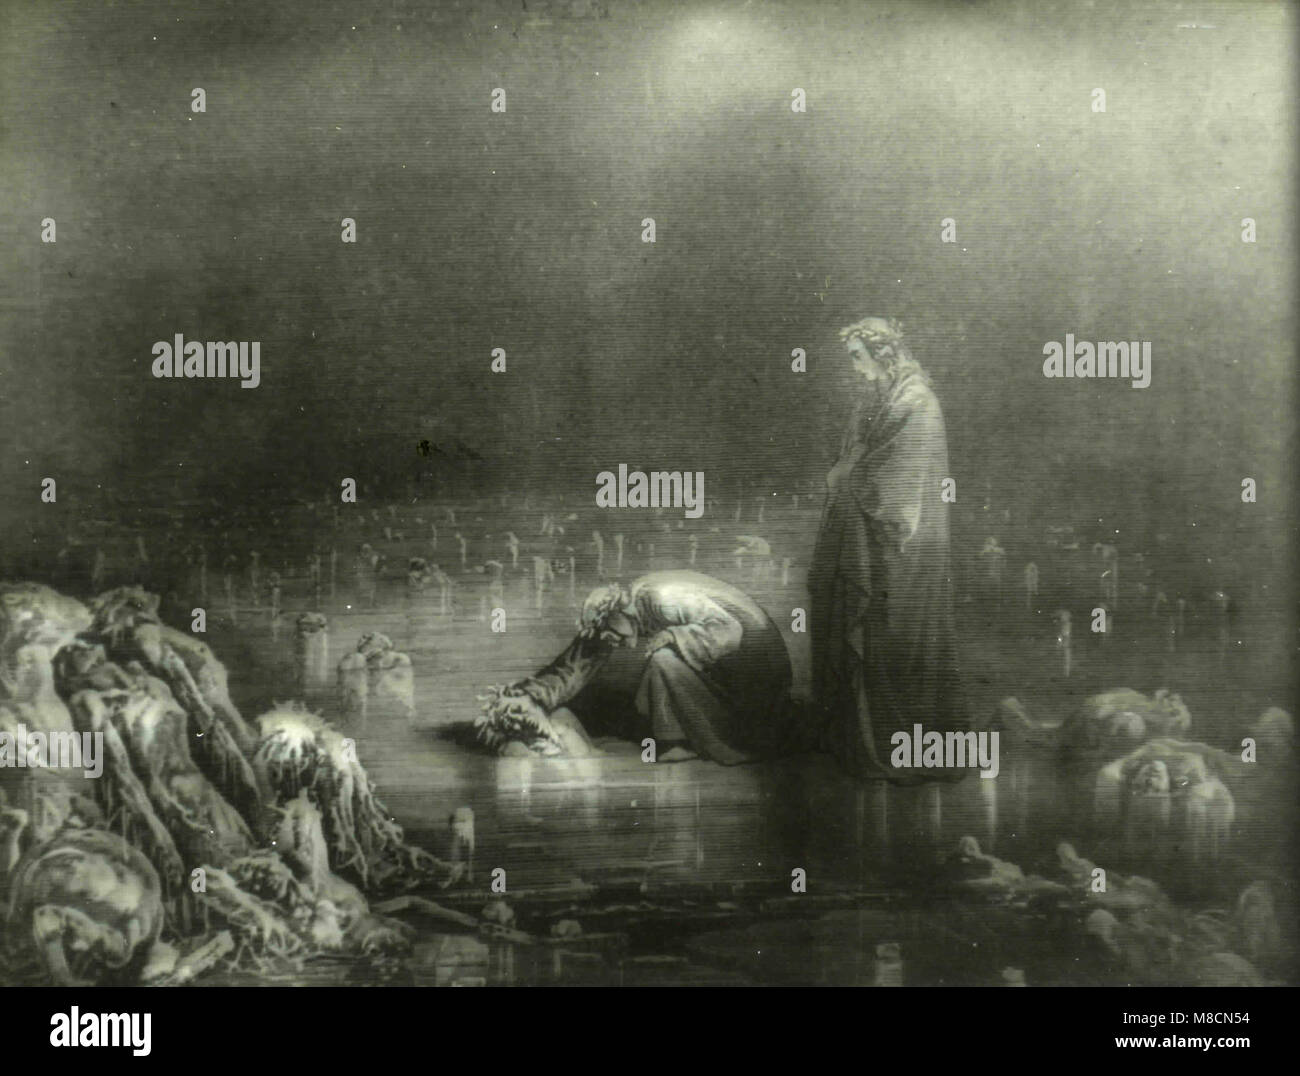 Canto XXXII (32), Dante aborde le traître Bocca Degli Abati, Dante's Inferno illustration par Dorè Banque D'Images